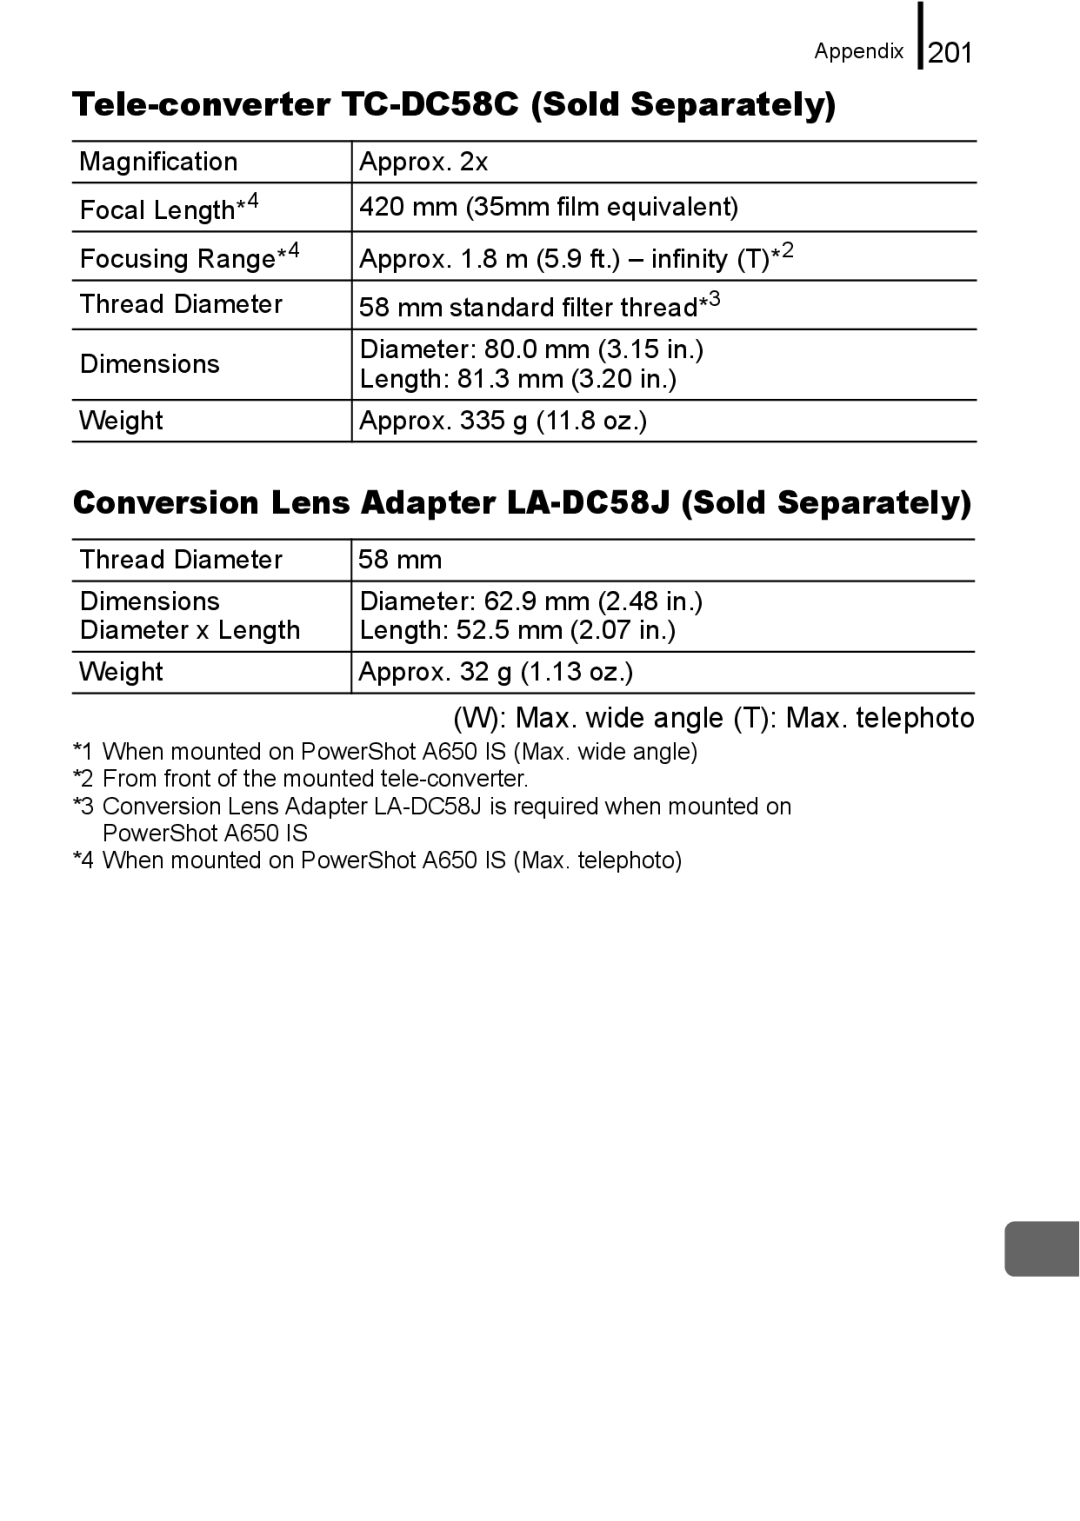 Canon A650 IS appendix Tele-converter TC-DC58C Sold Separately, Conversion Lens Adapter LA-DC58J Sold Separately, 201 